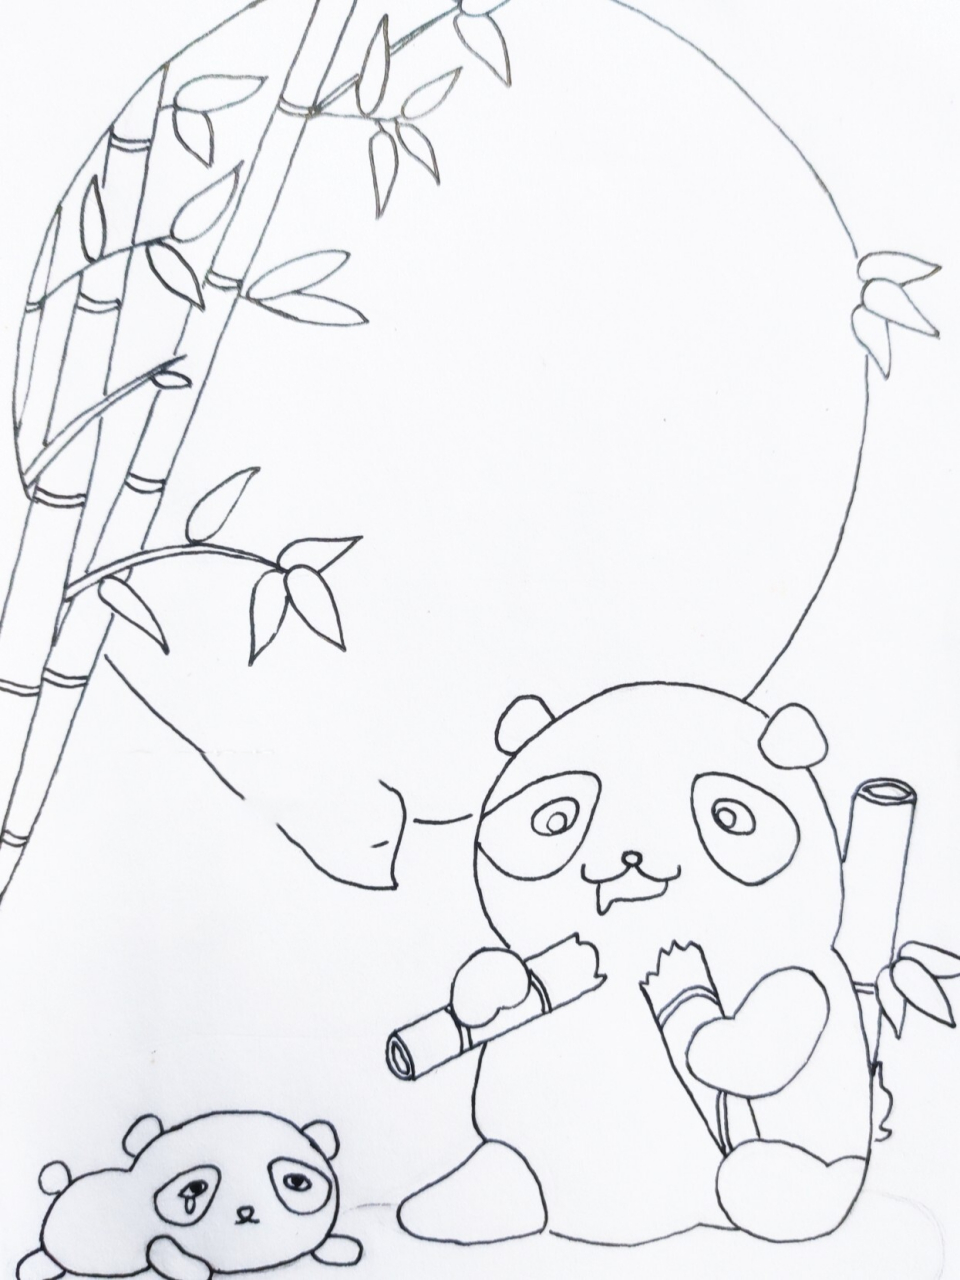 大熊猫的简笔画竹子图片